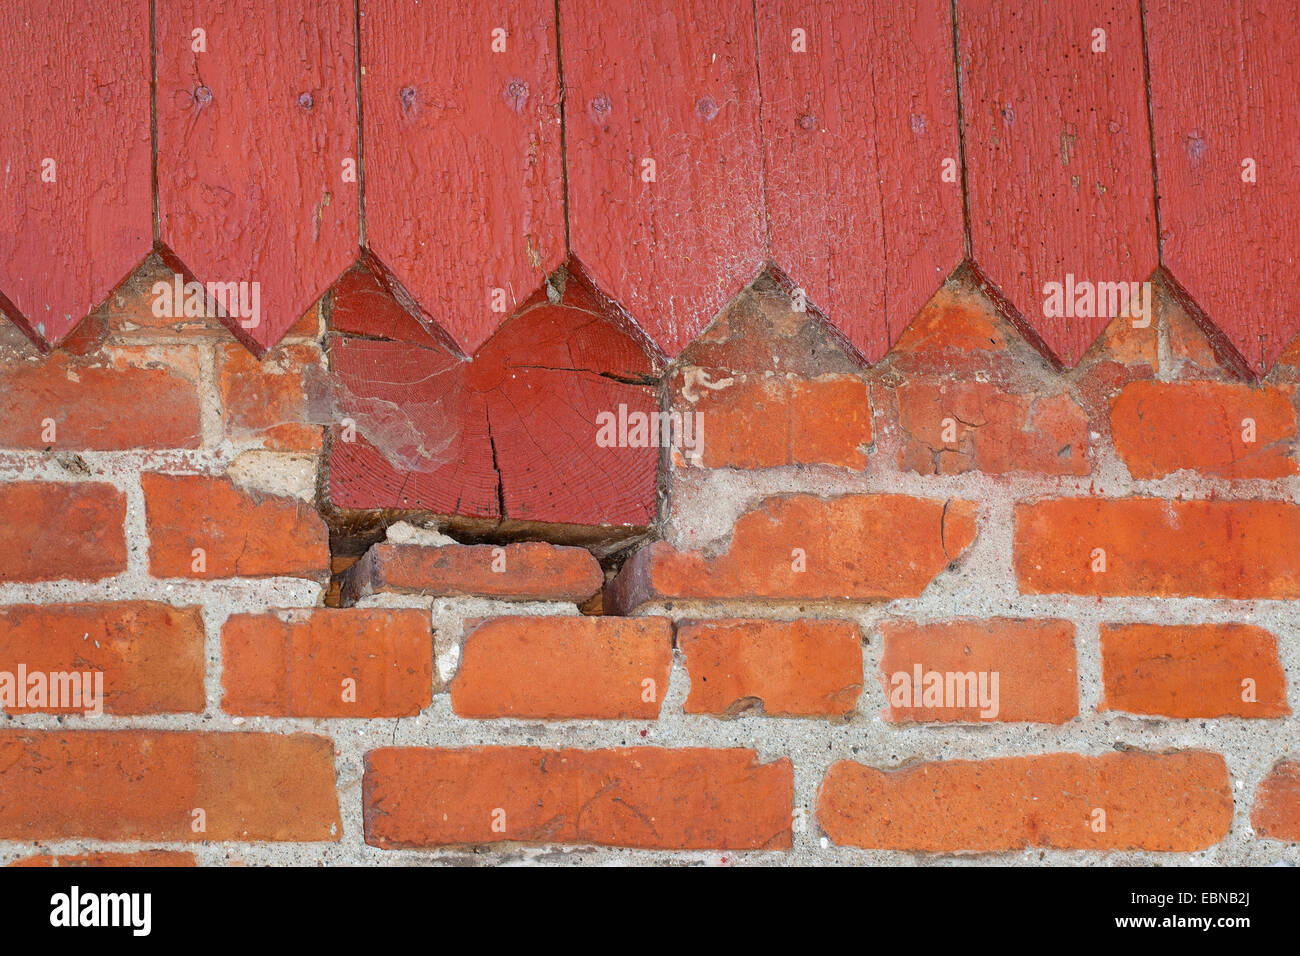 Columnas y nichos en la albañilería como escondite para los animales, Alemania Foto de stock